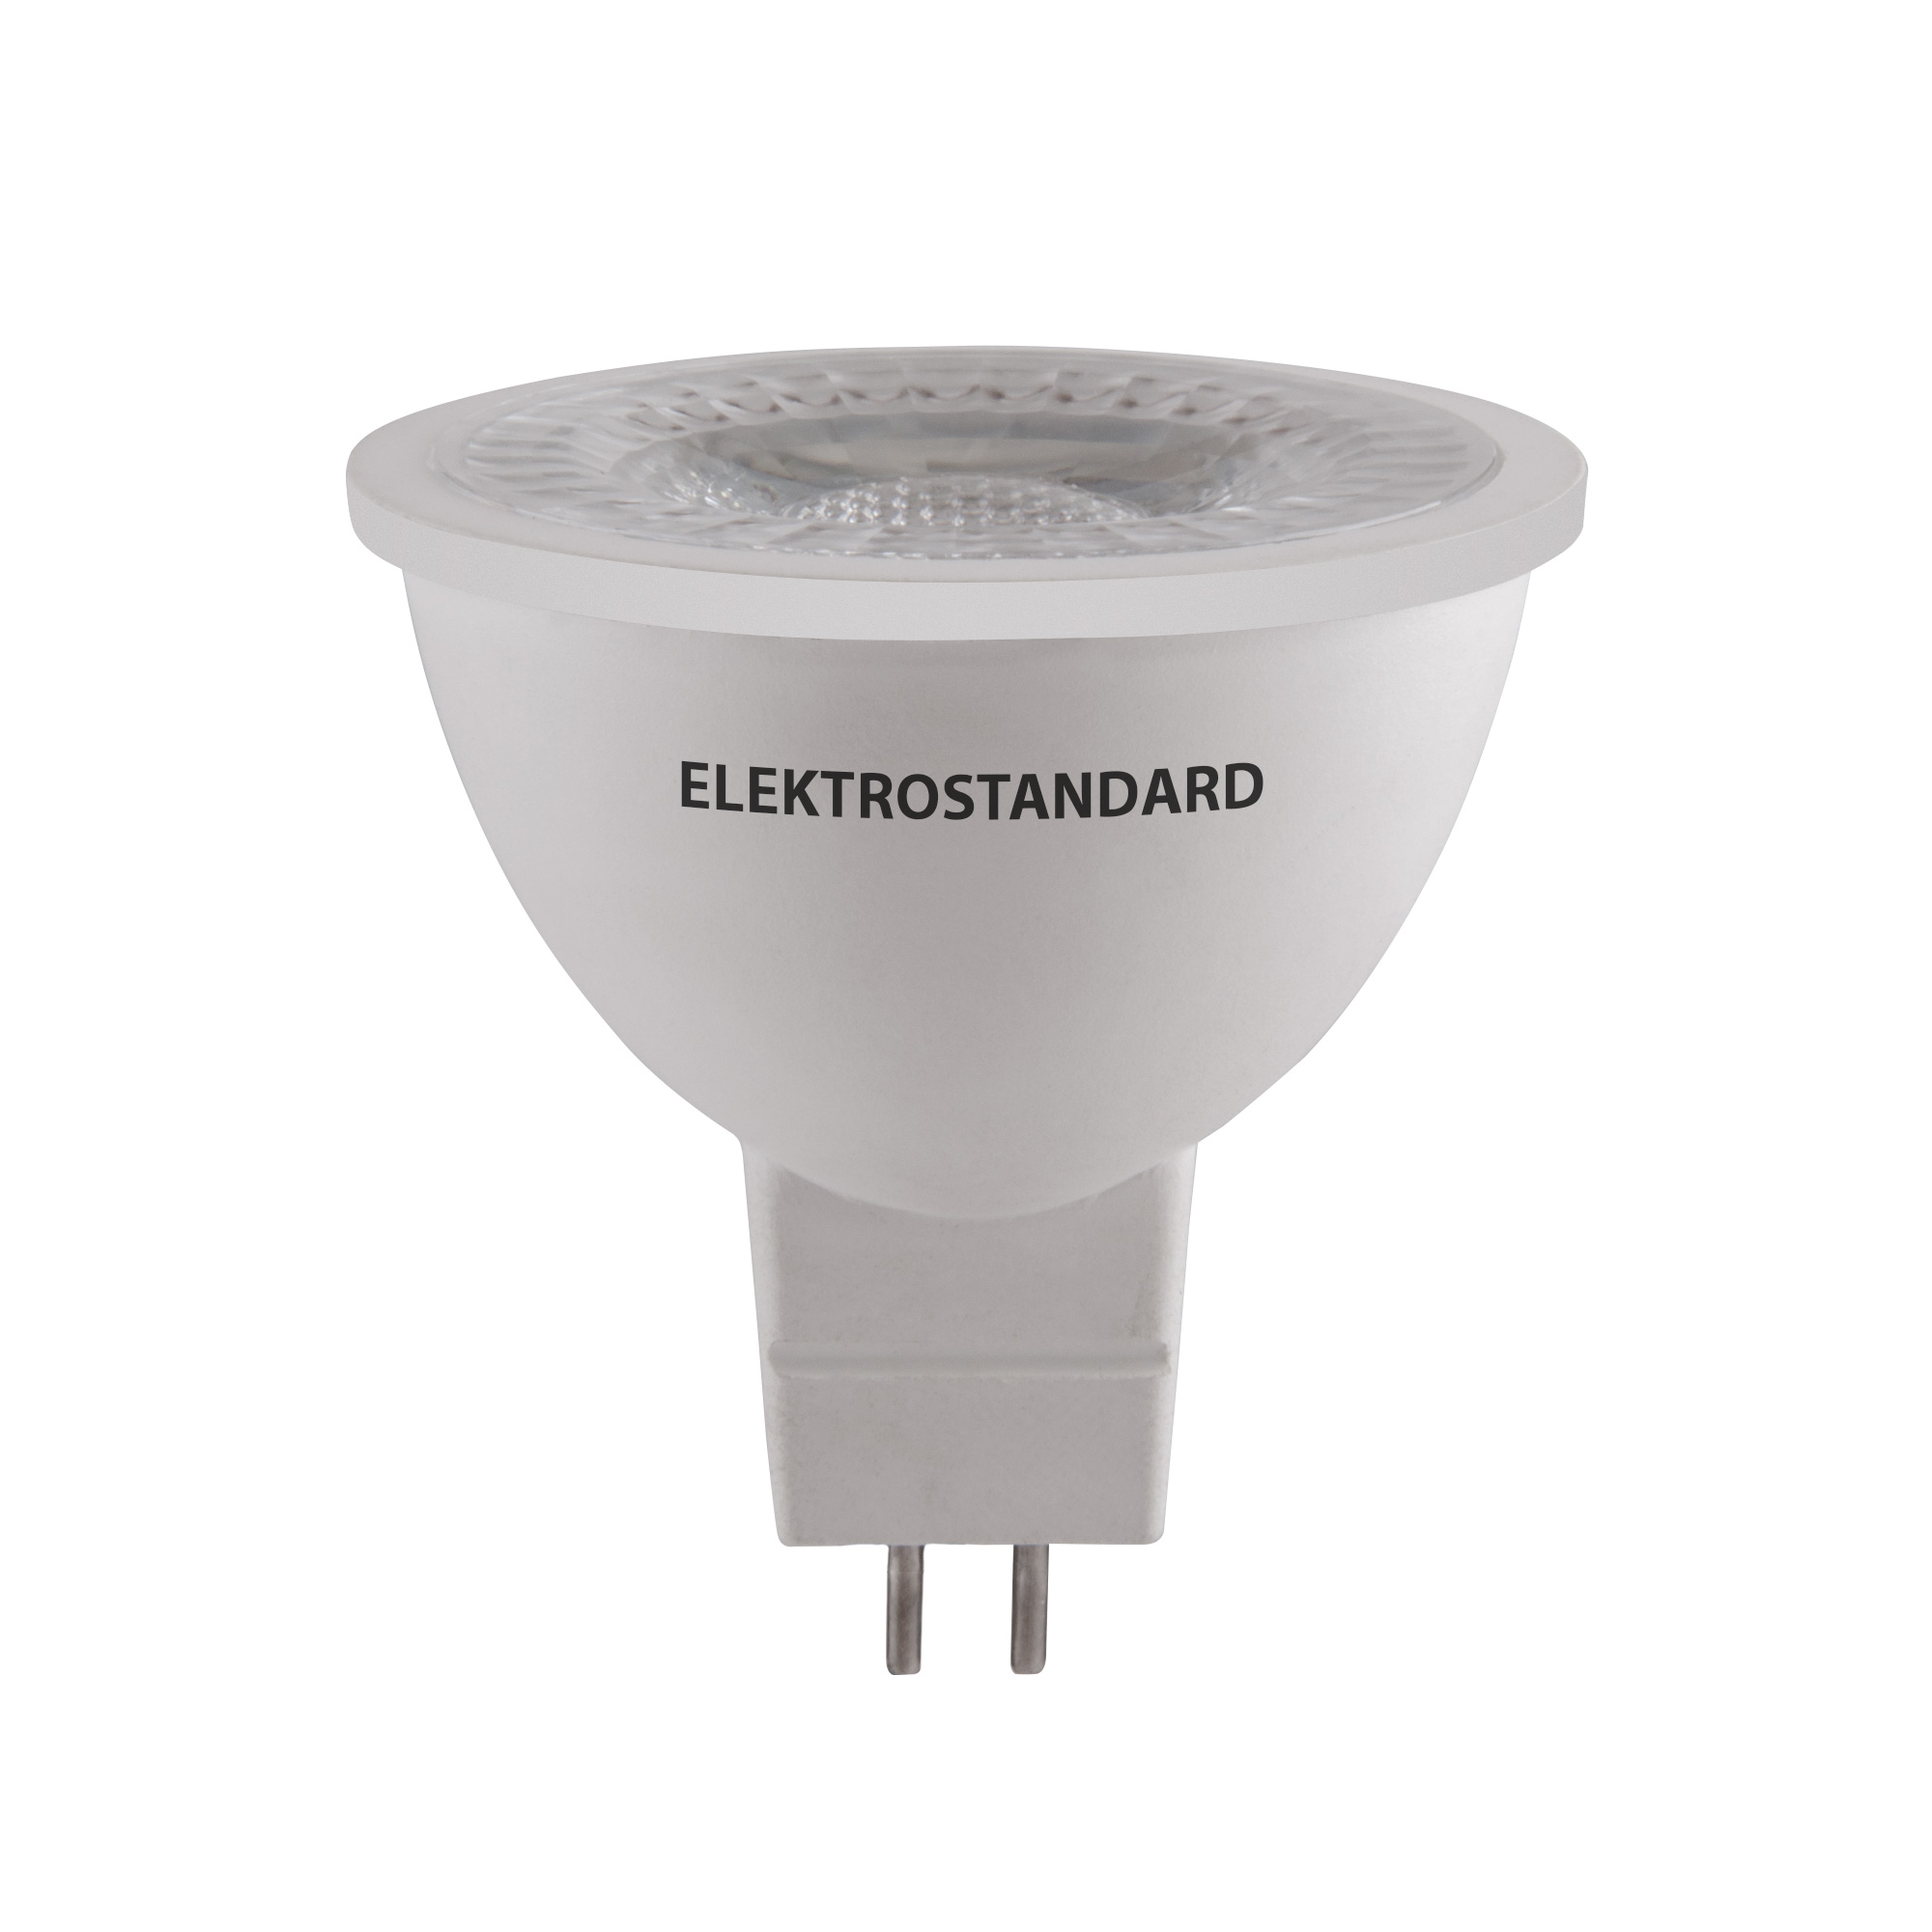 Светодиодная лампа направленного света JCDR 5W 3300K GU10 Elektrostandard BLGU1007 a050180